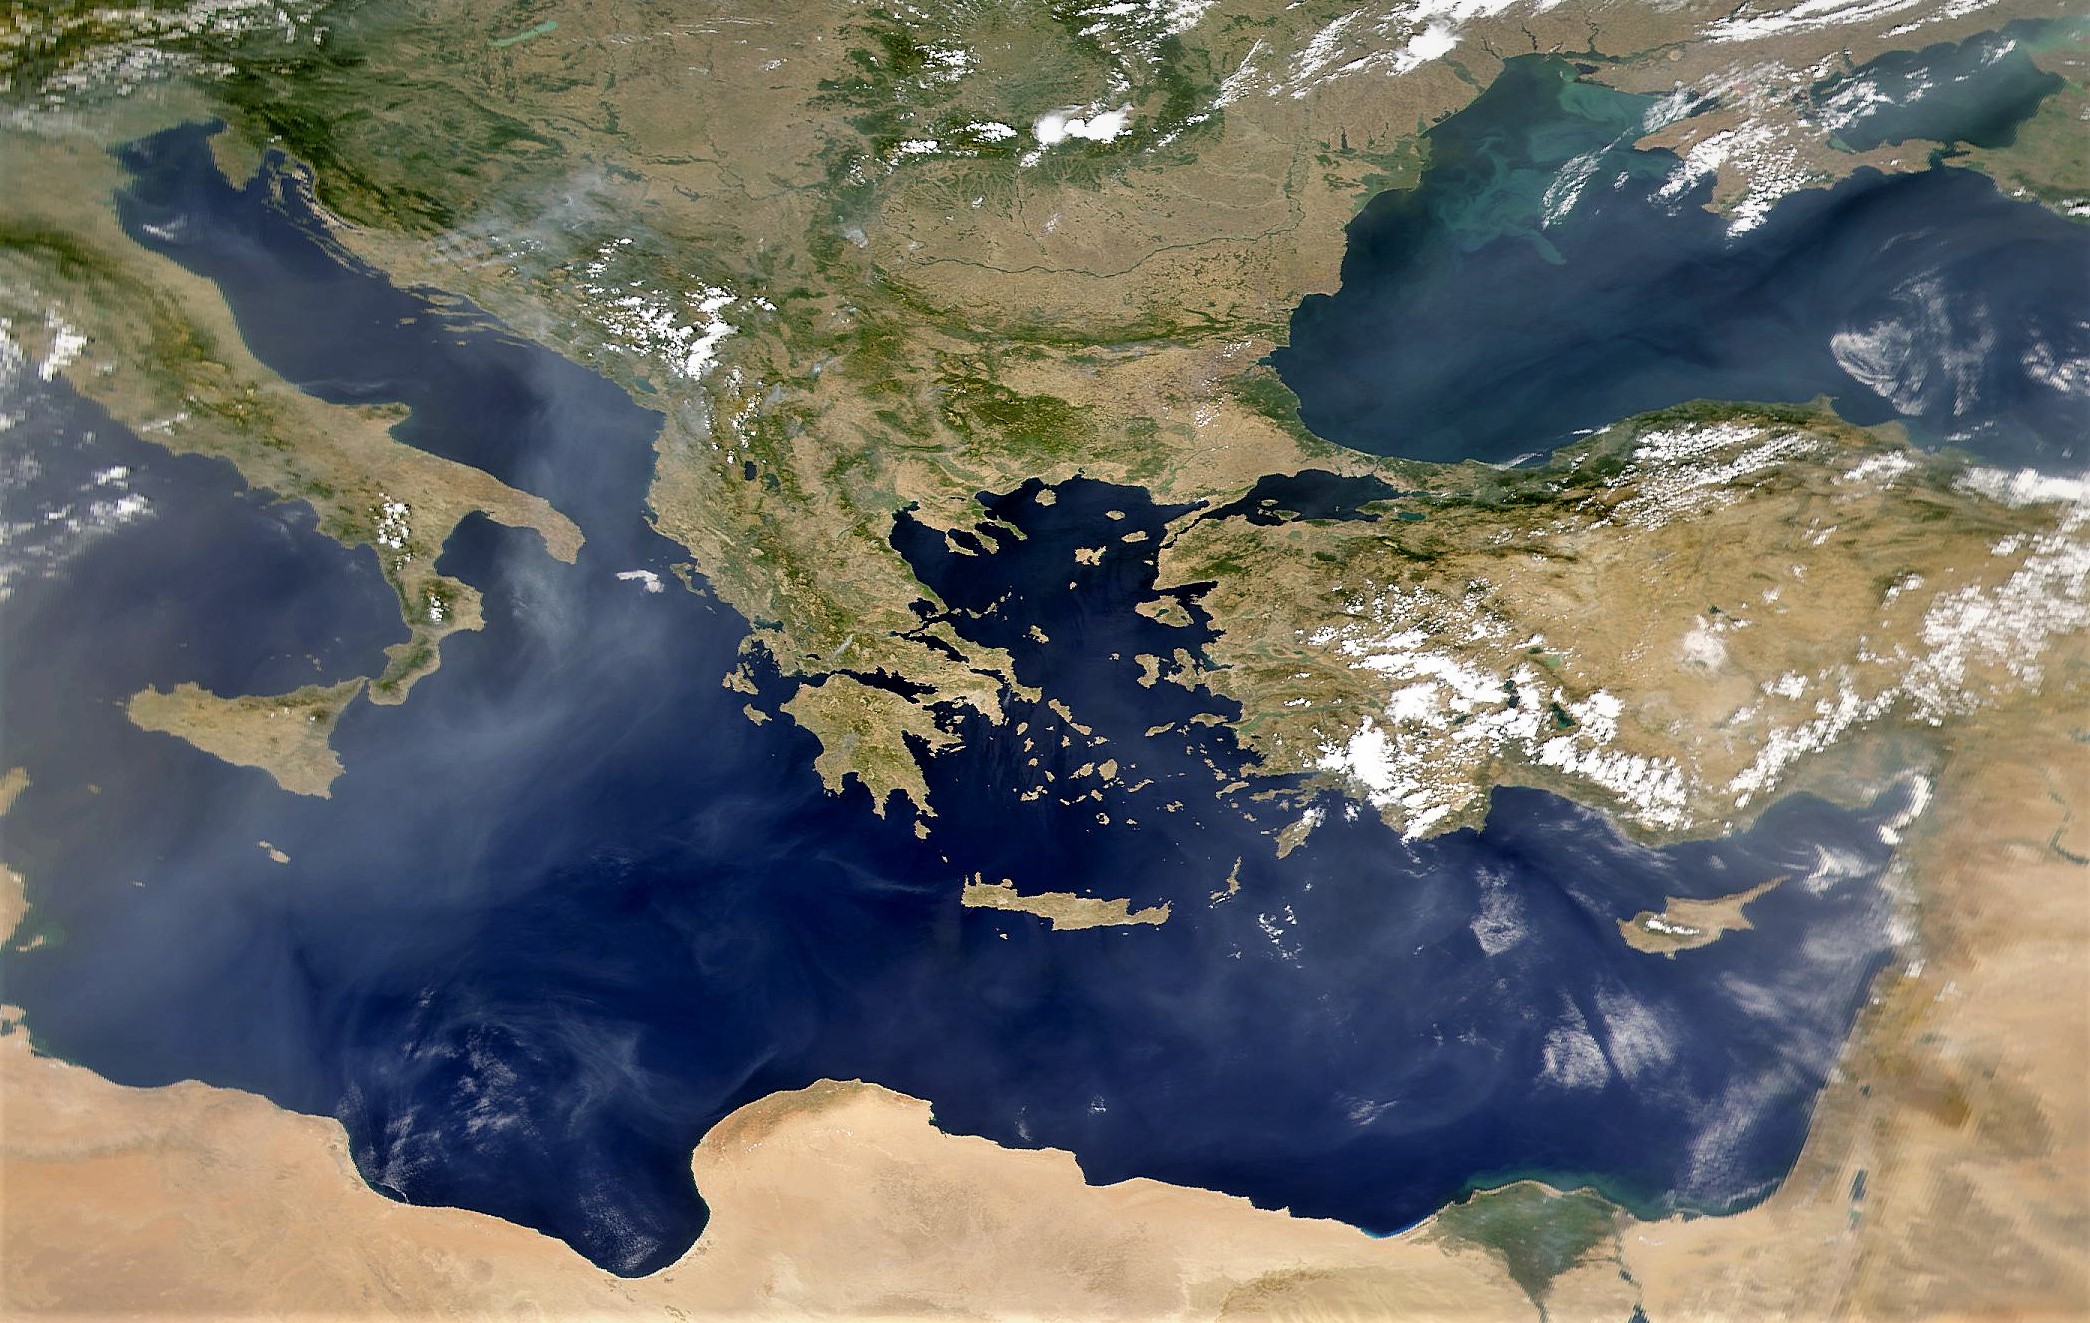 Πώς η Ελλάδα έχασε την ευκαιρία να γίνει μεγάλη δύναμη σε Μεσόγειο και Μέση Ανατολή και πως η Τουρκία πήρε την θέση της